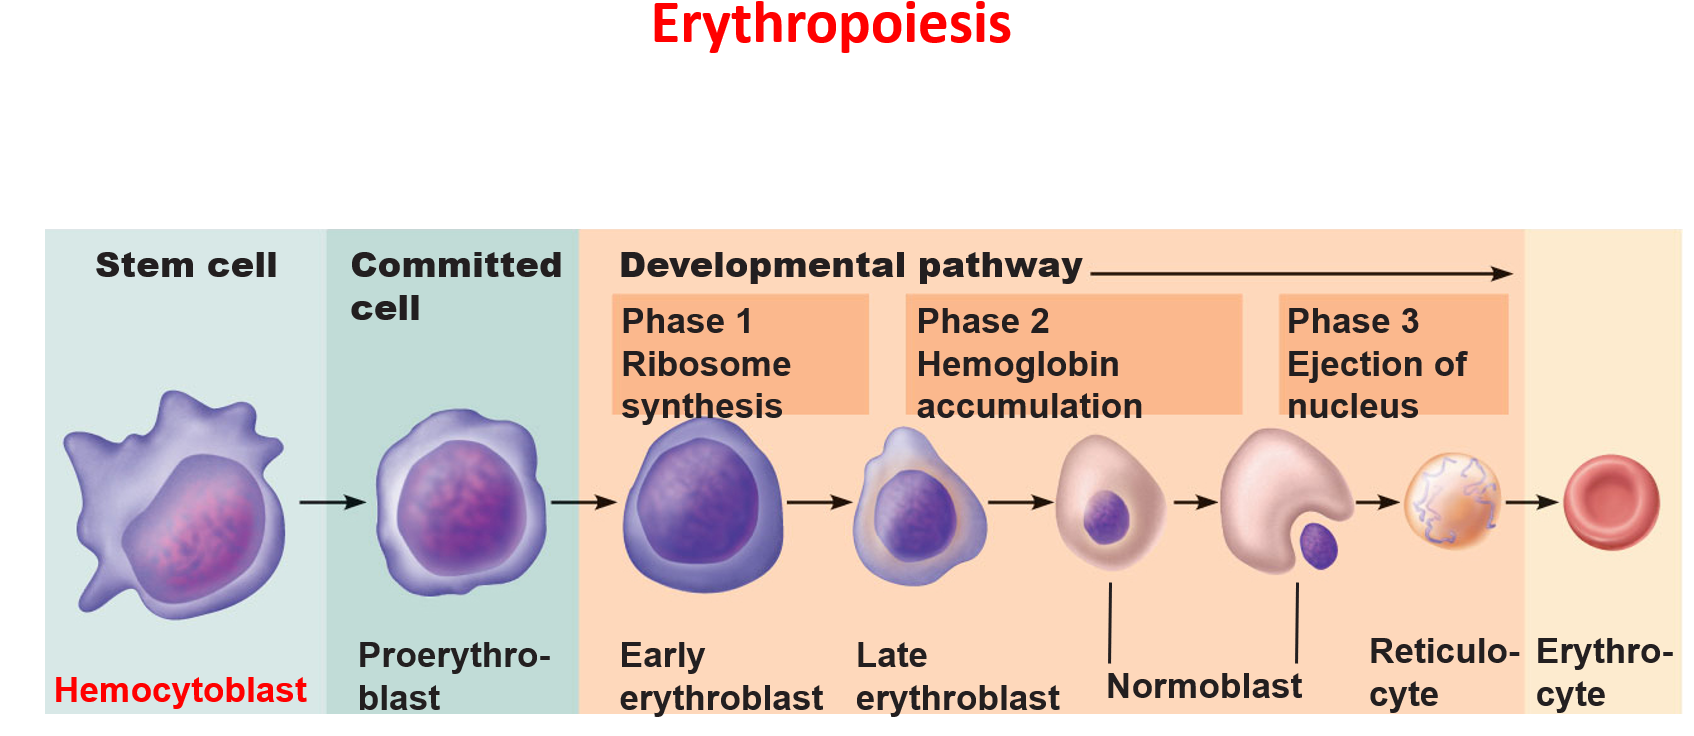 erythropoiesis